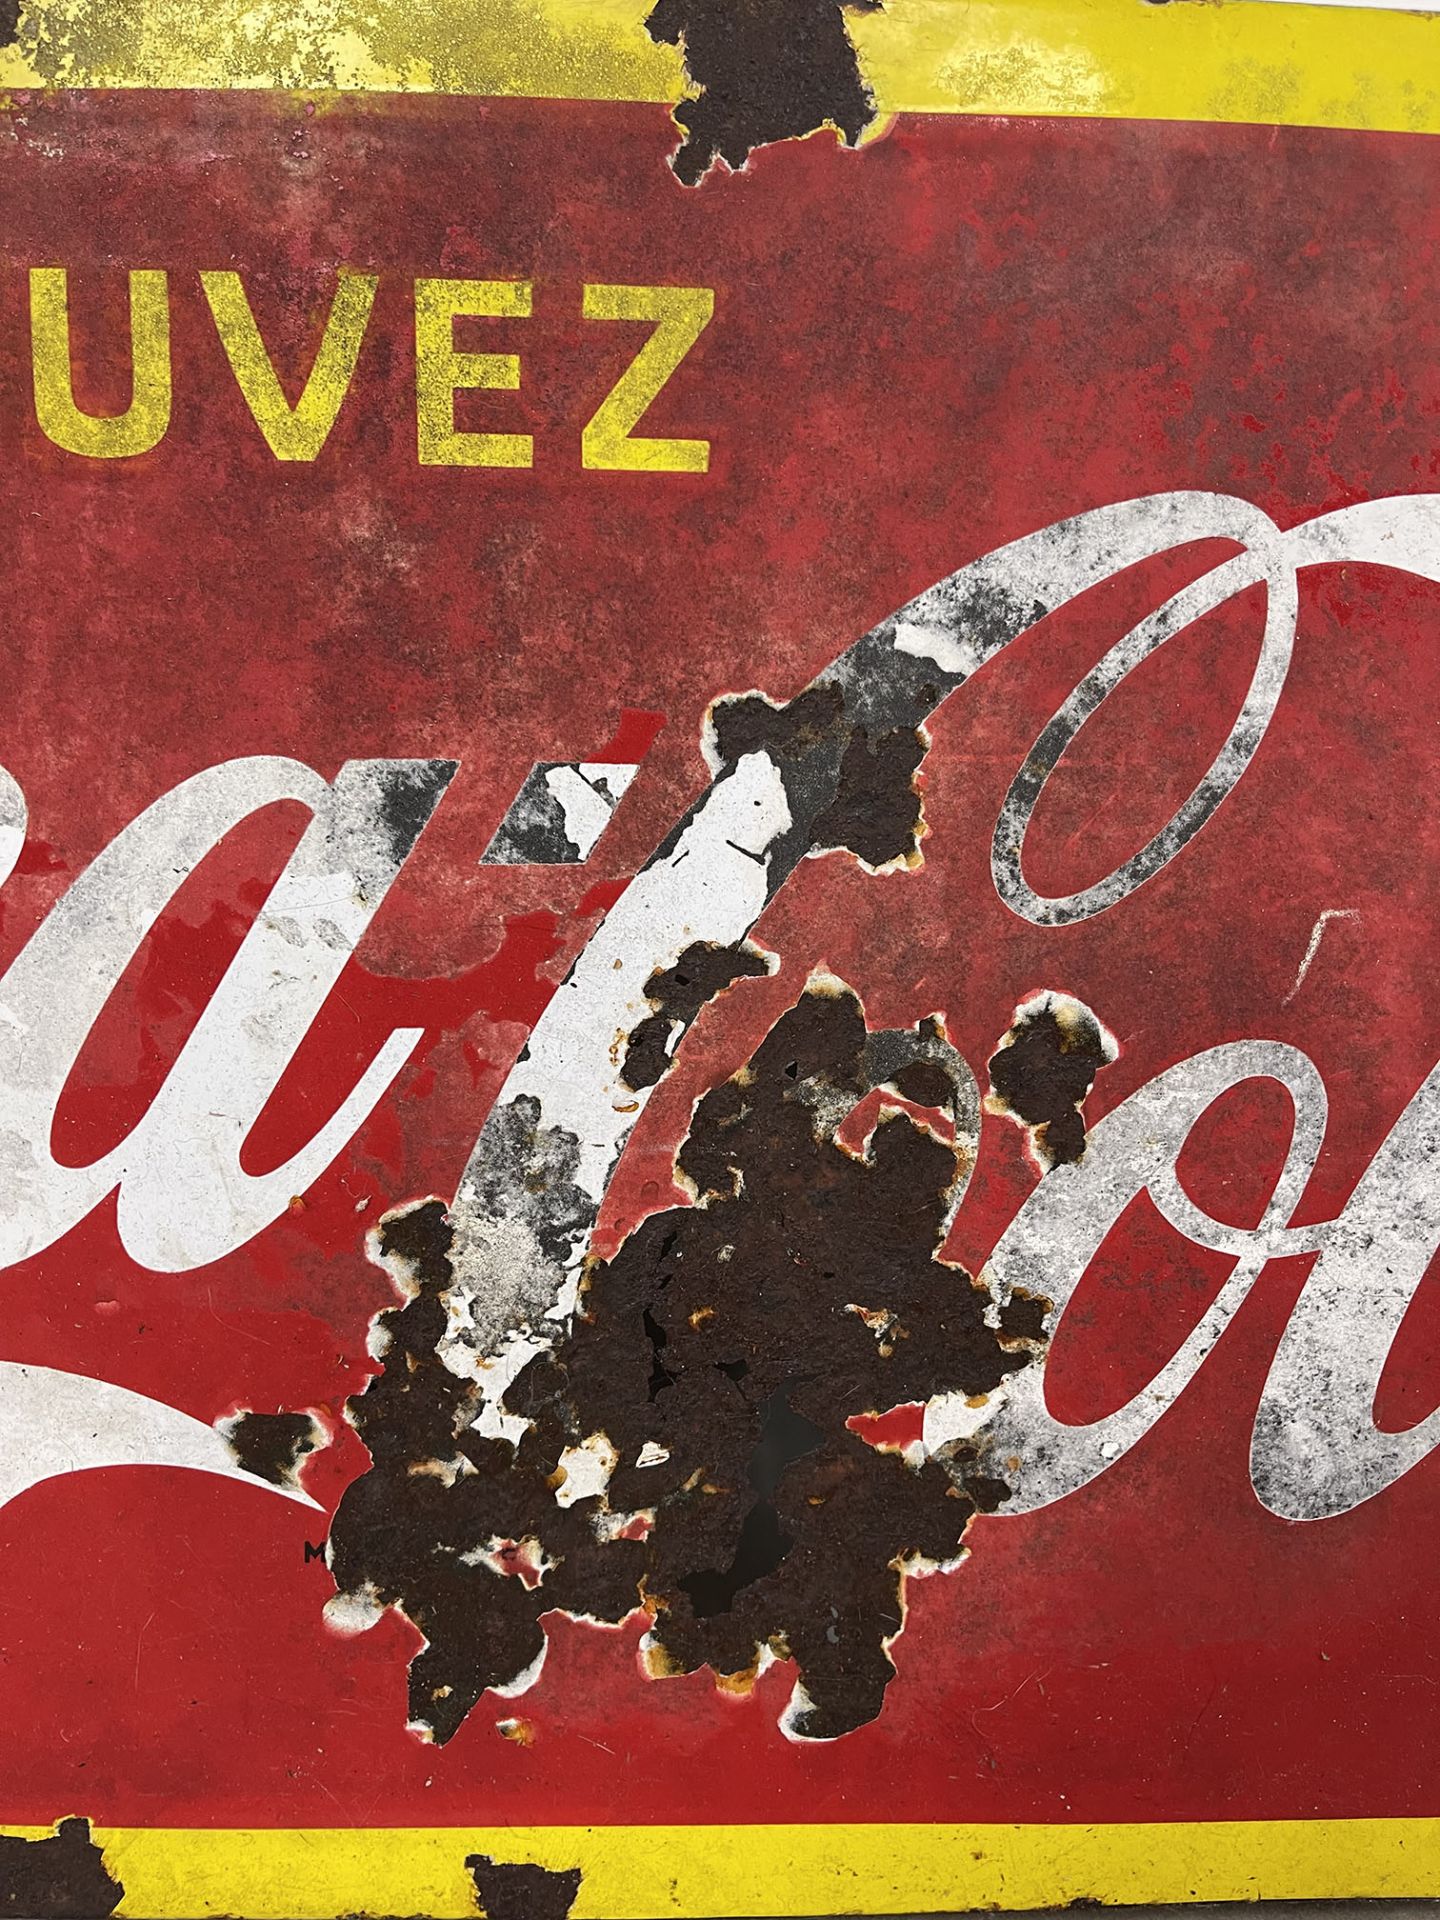 Vintage Belgian Coca-Cola Enamel Sign Featuring Coca-Cola Sprite Boy - Image 3 of 7